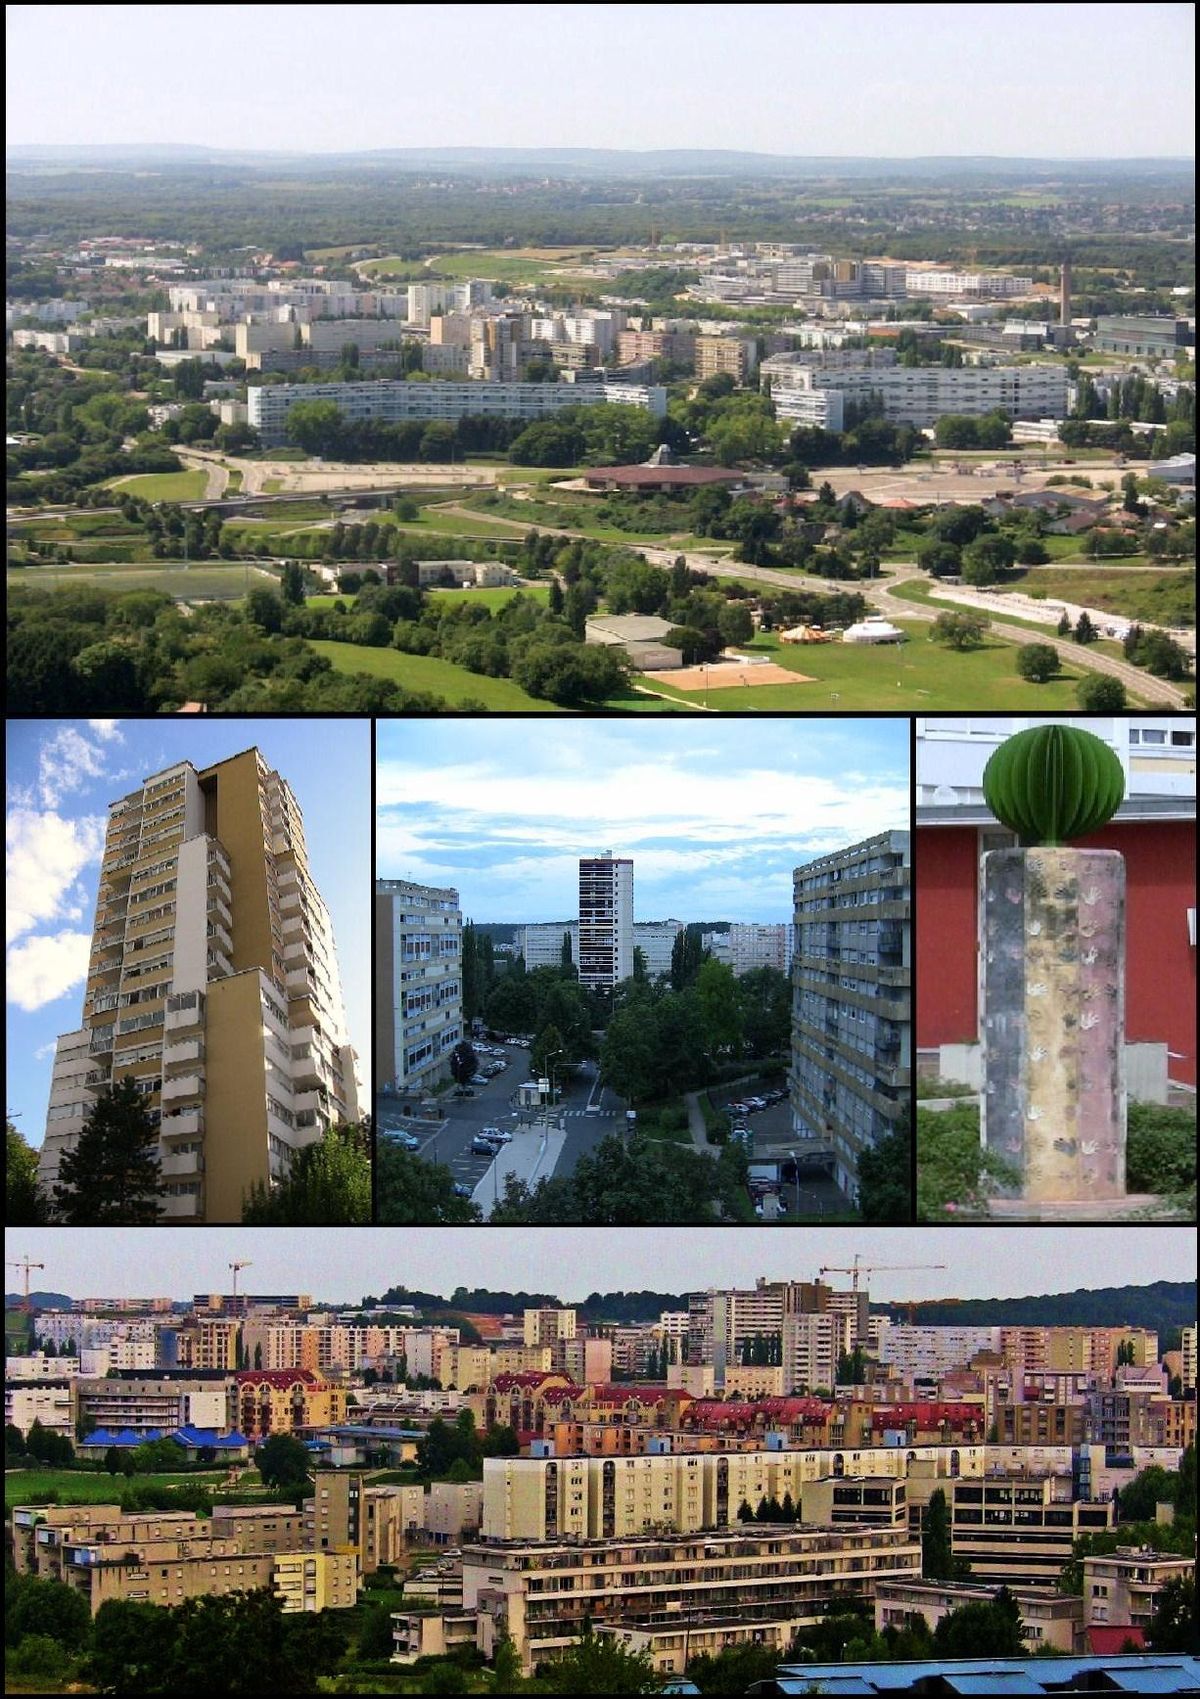 De haut en bas et de gauche à droite : Planoise depuis Rosemont, la tour de Planoise, les Époisses, la statue de la diversité et vue du quartier depuis la colline de Planoise.